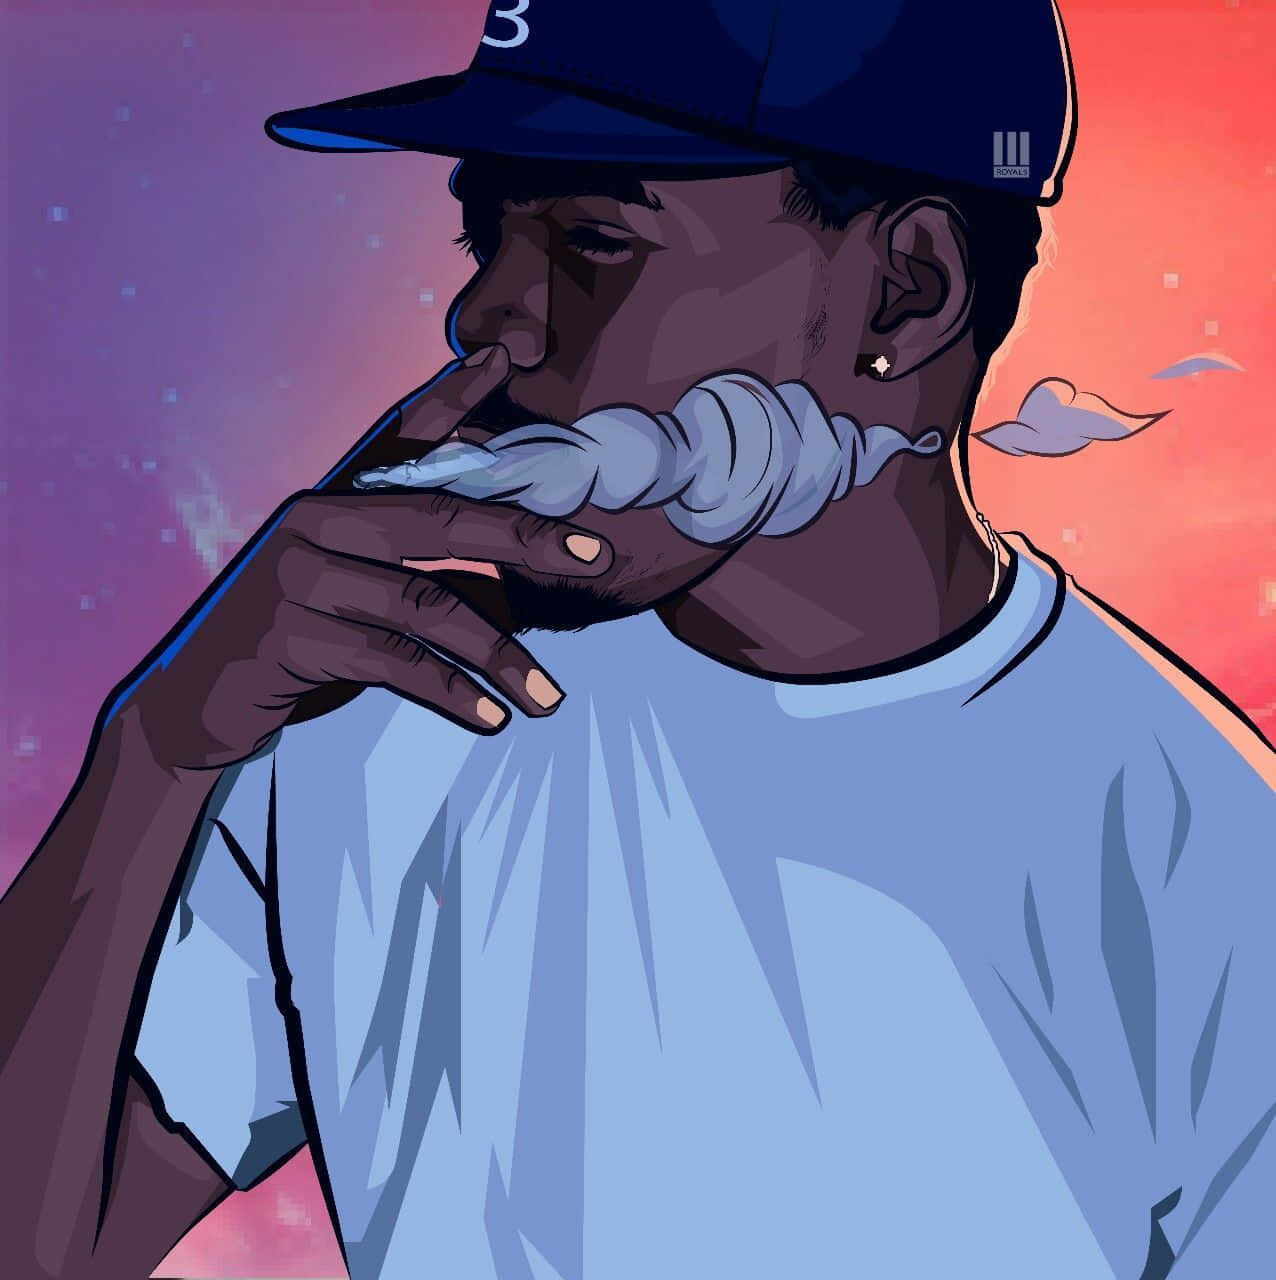 En mand i en blå hue, der ryger en cigaret. Wallpaper